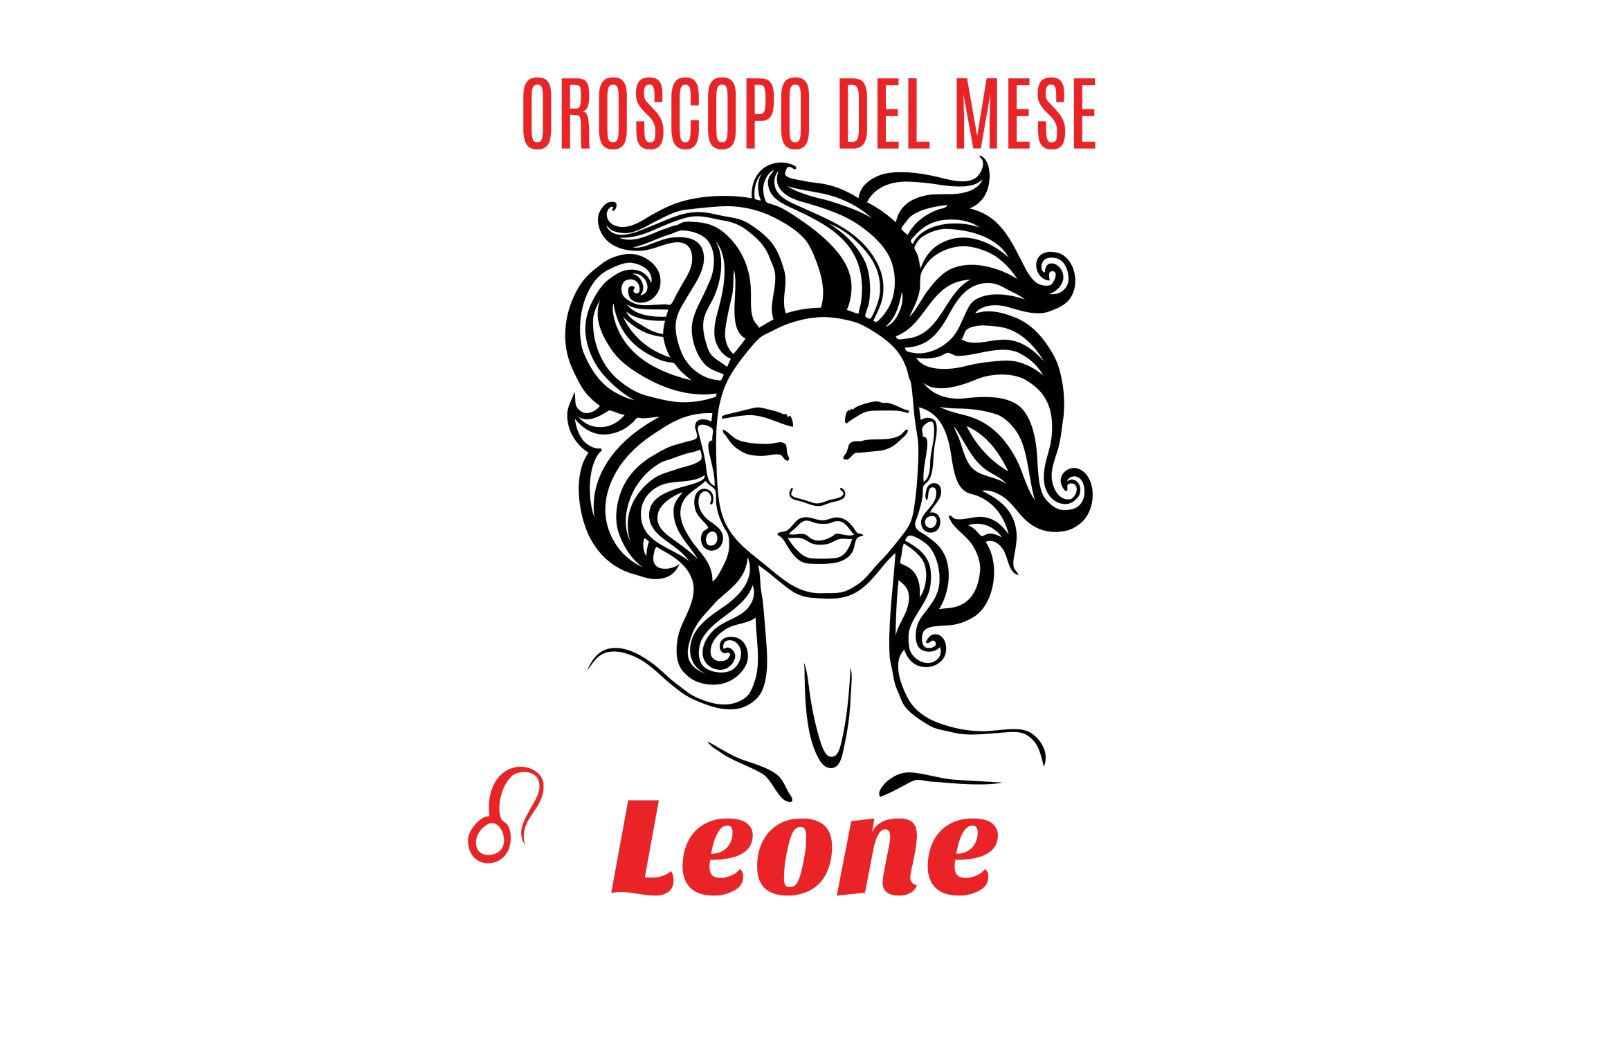 Oroscopo del mese: Leone - novembre 2018